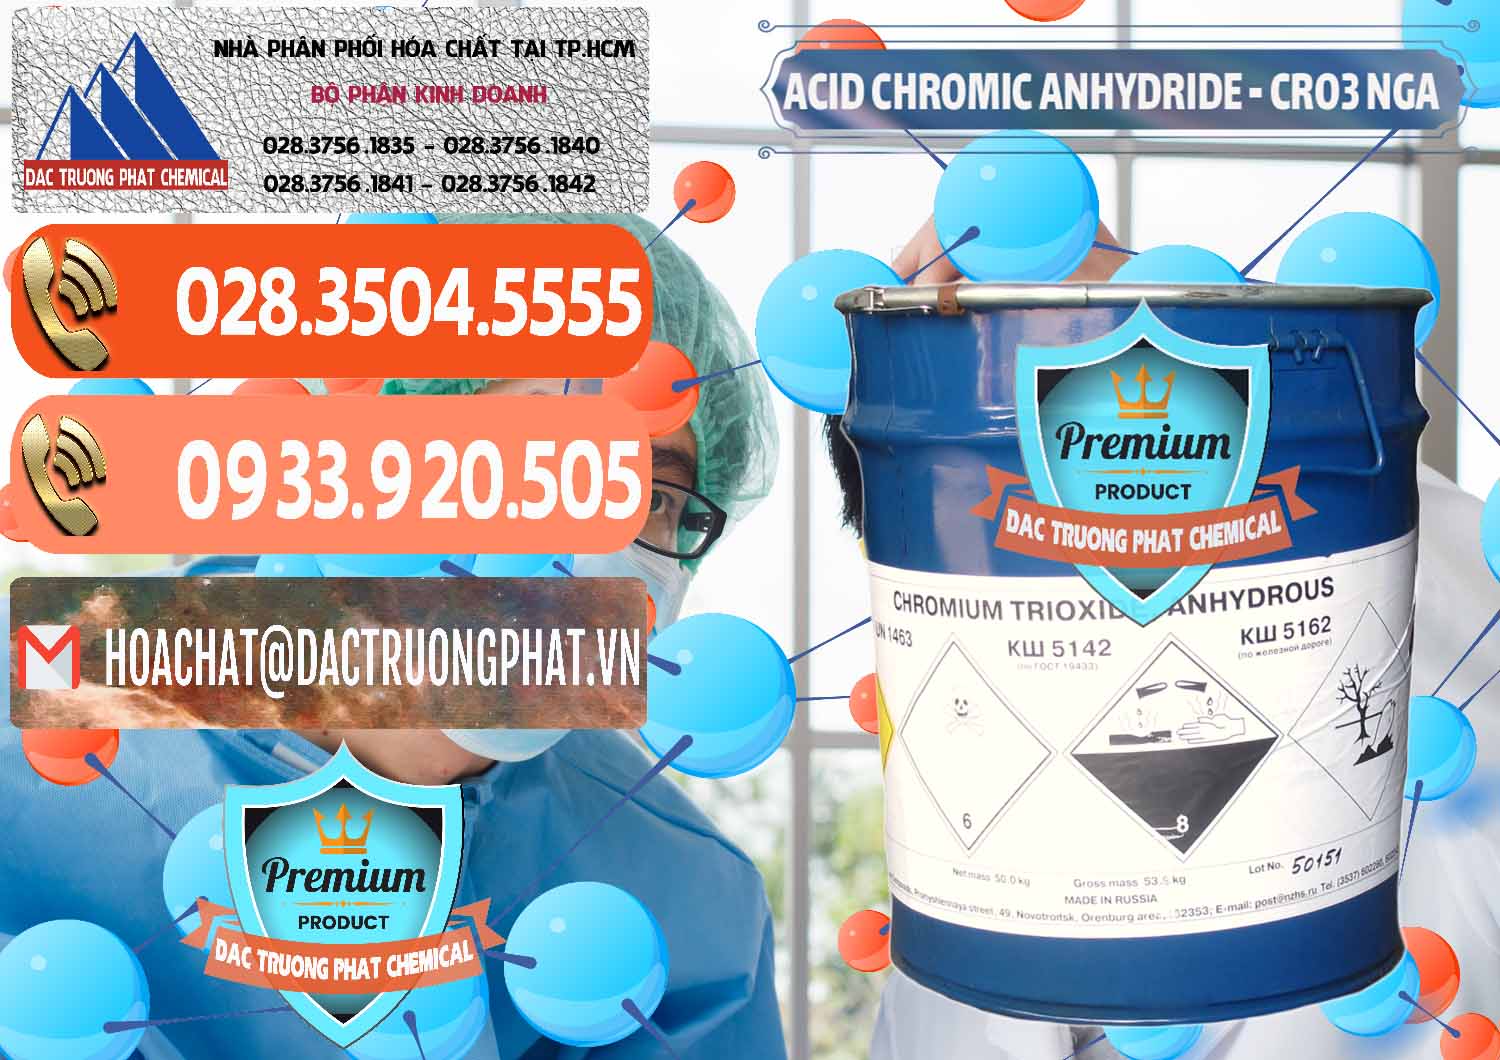 Kinh doanh và bán Acid Chromic Anhydride - Cromic CRO3 Nga Russia - 0006 - Cung cấp _ phân phối hóa chất tại TP.HCM - hoachatmientay.com